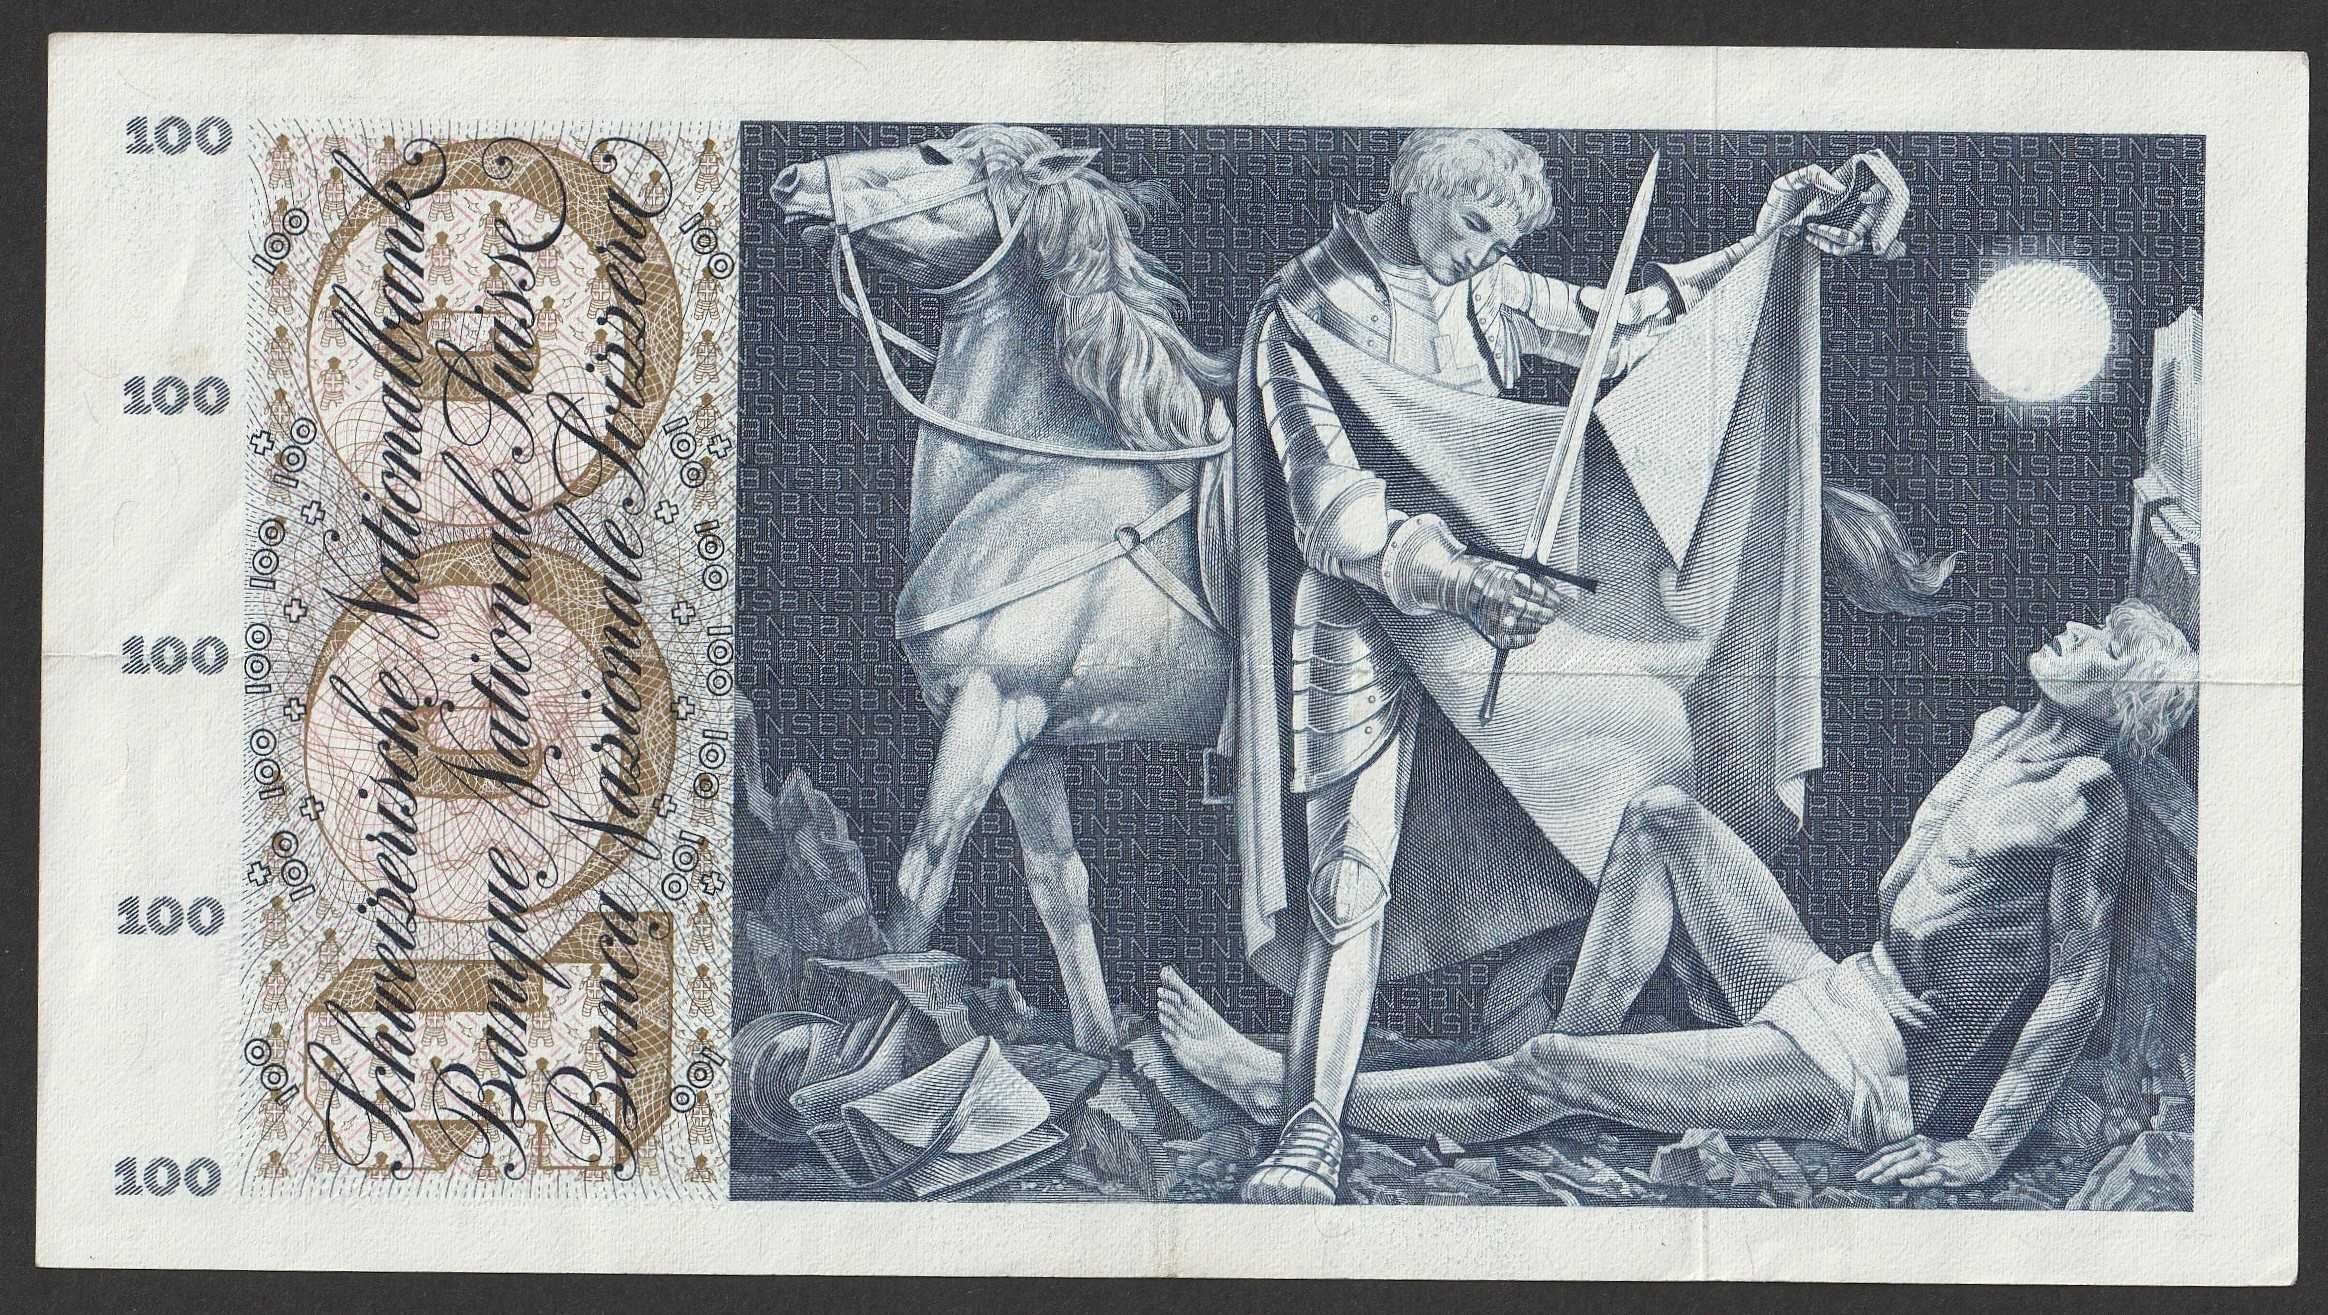 Szwajcaria 100 franków 1969 - 66T